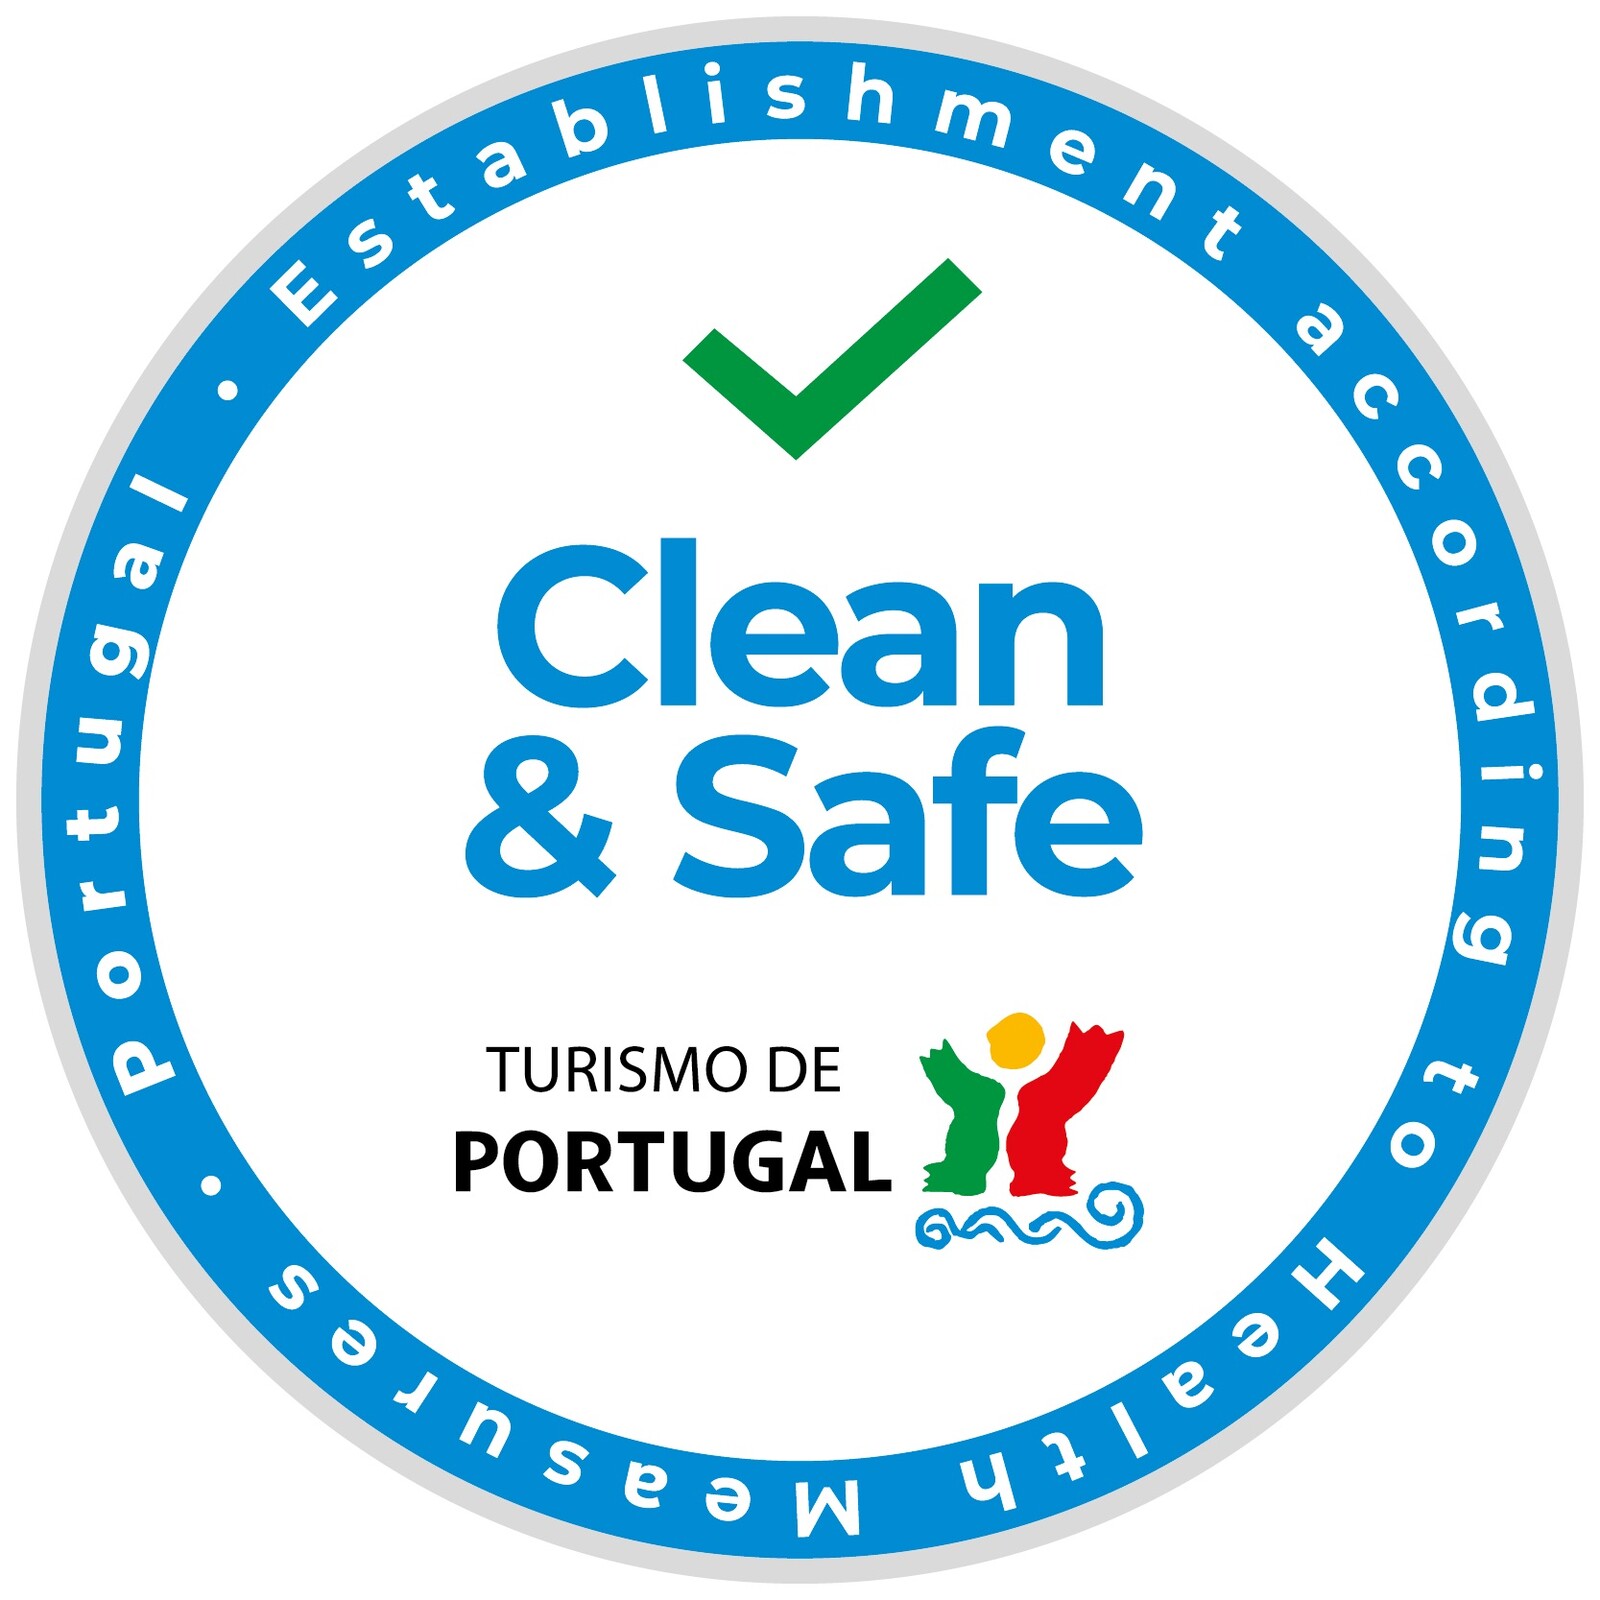 Selo “Clean & Safe” é atribuído pelo Turismo de Portugal